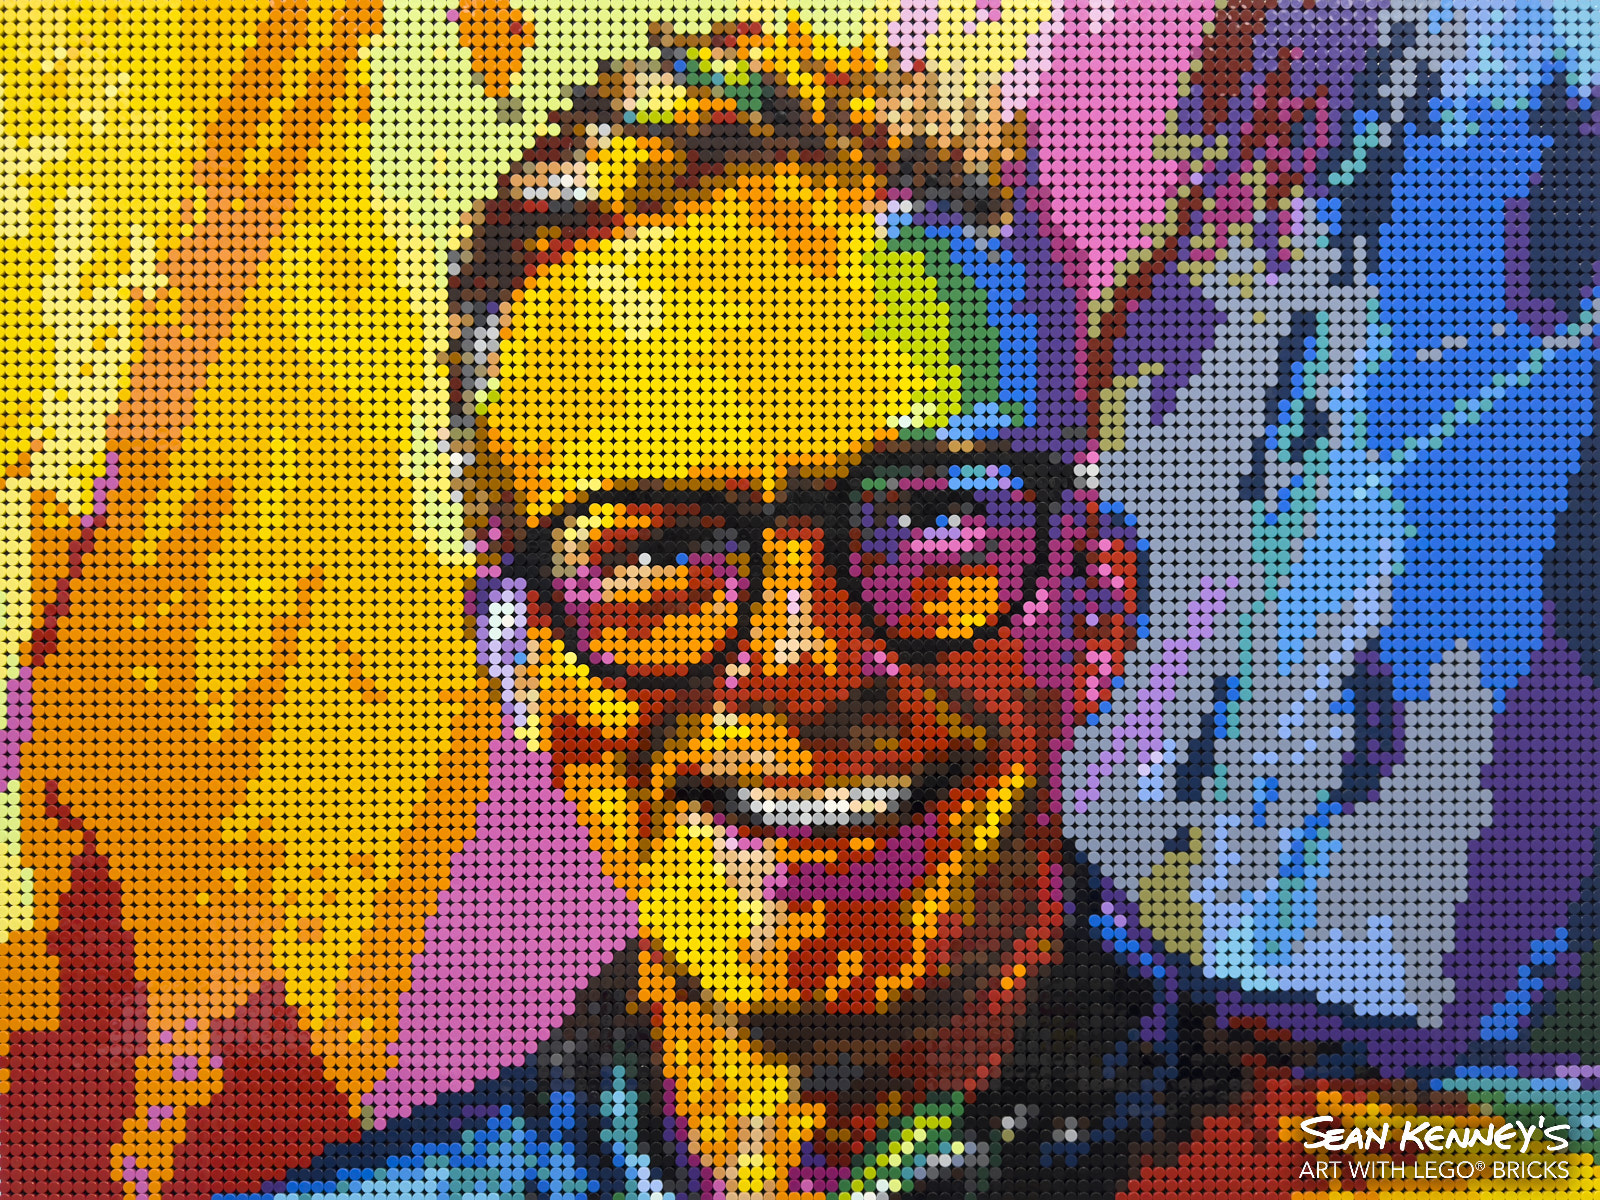 Self-portrait-2023 LEGO art by Sean Kenney